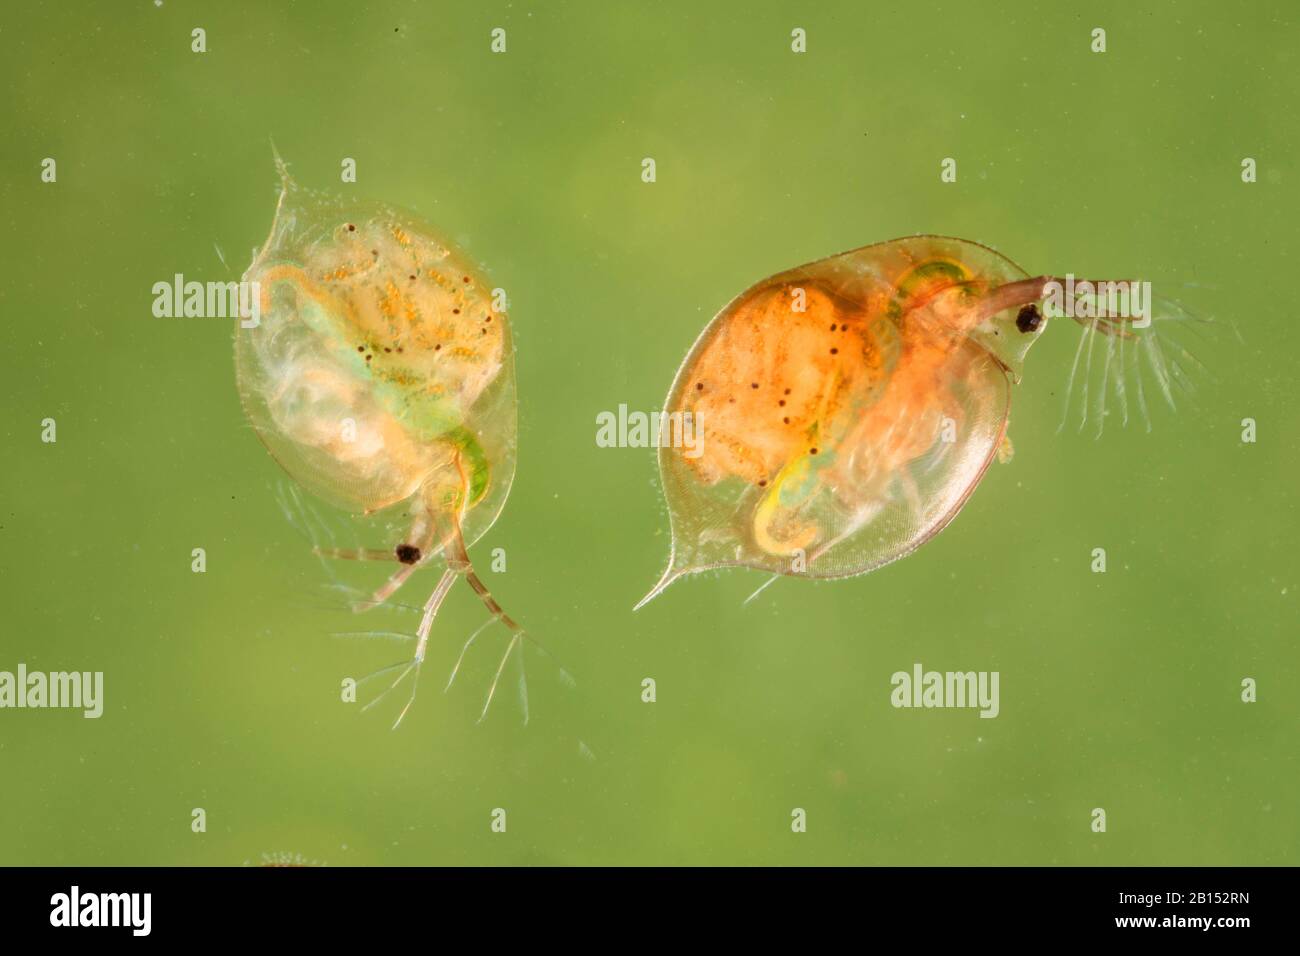 Pulgas de agua común (Daphnia pulex), hembras con descendencia en su abdomen, Alemania Foto de stock